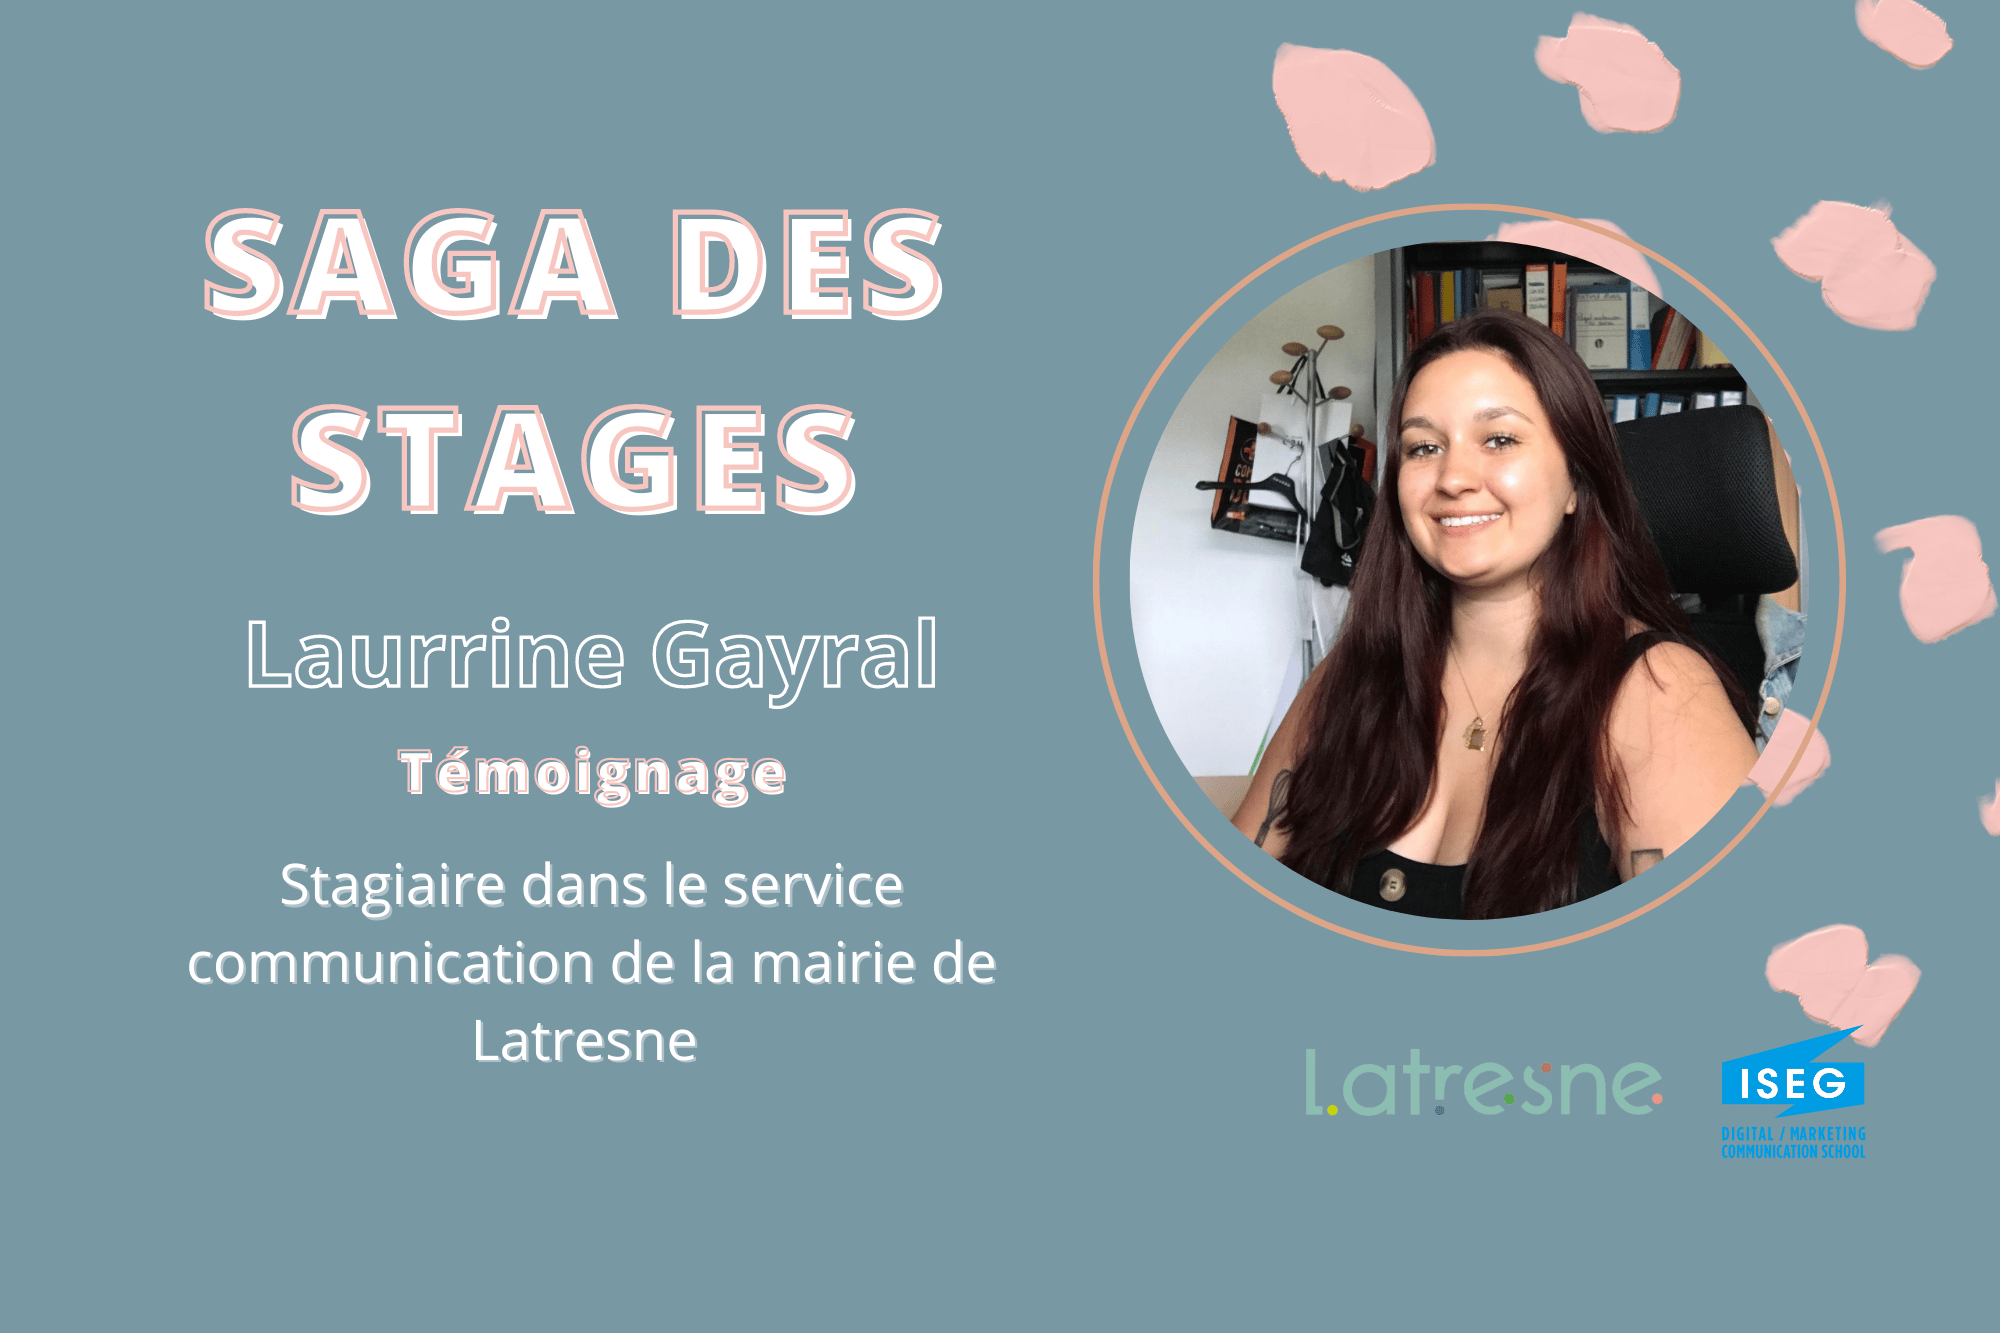 SAGA DES STAGES : Rencontre avec Laurrine Gayral en stage à la Mairie de Latresnes